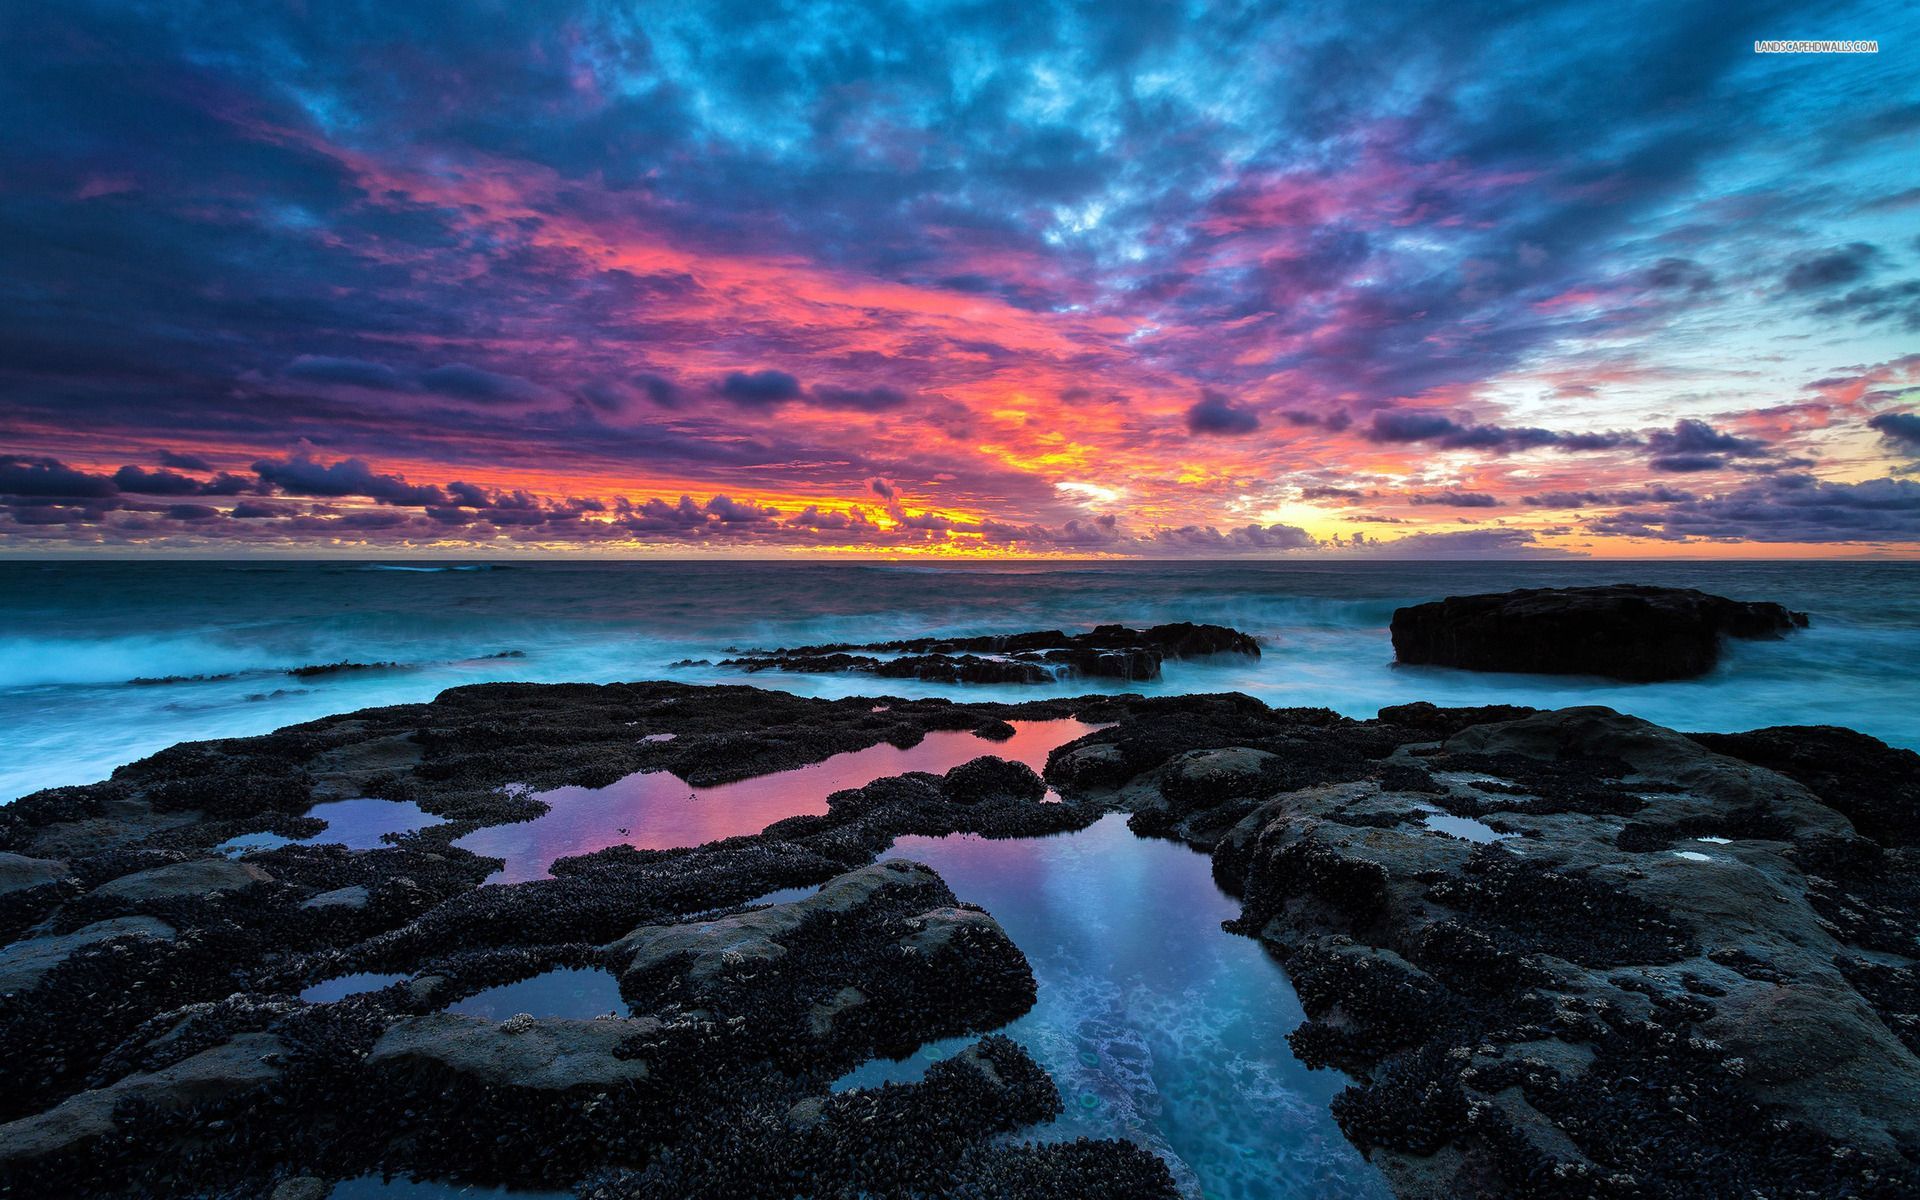 Ocean Black Rocks & Pink Sky wallpapers | Ocean Black Rocks & Pink ...